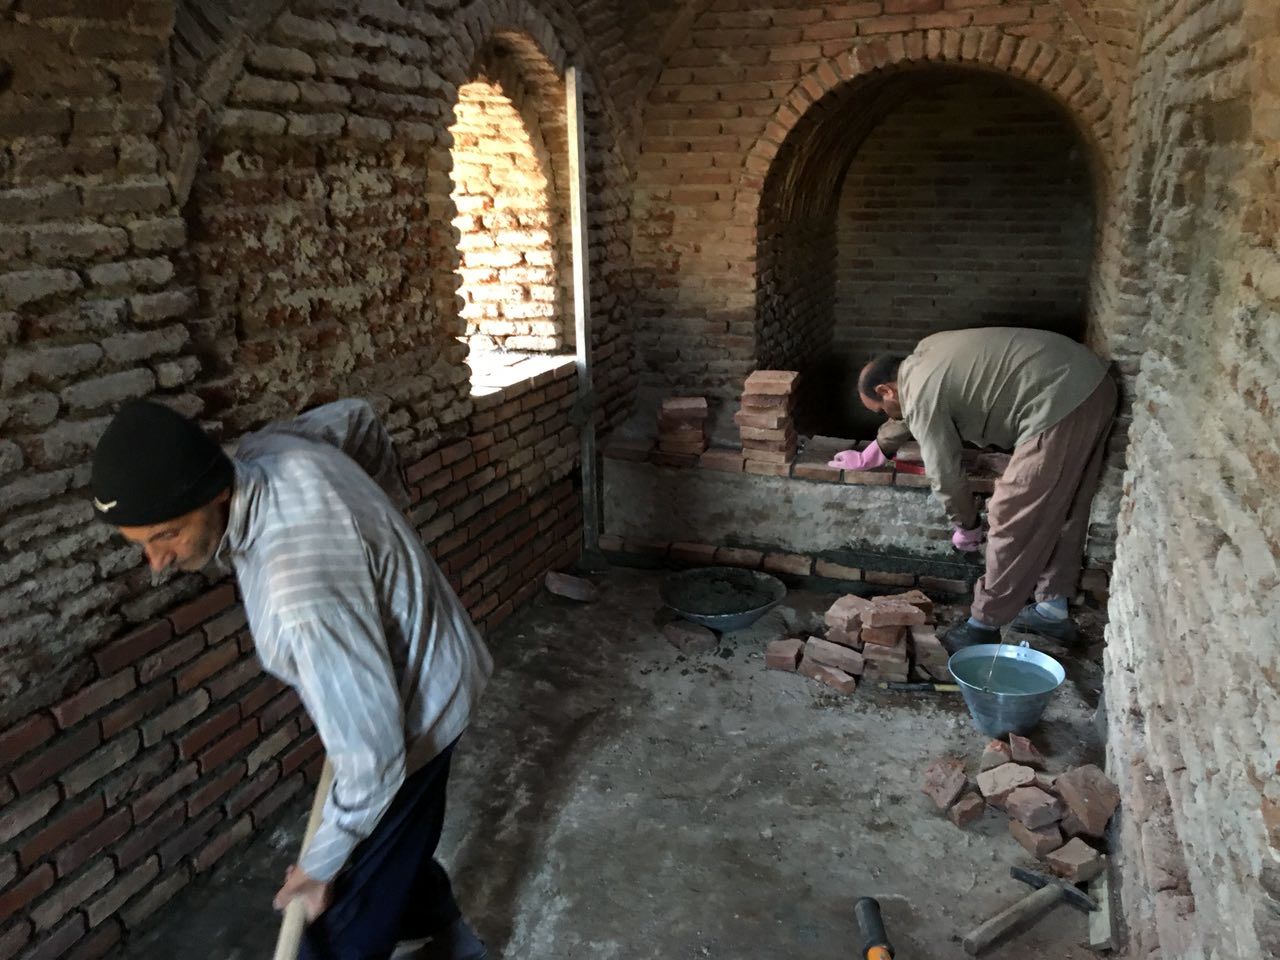 حمام تاریخی مریان به پایگاه پژوهشی و حفاظتی میراث فرهنگی تبدیل می شود